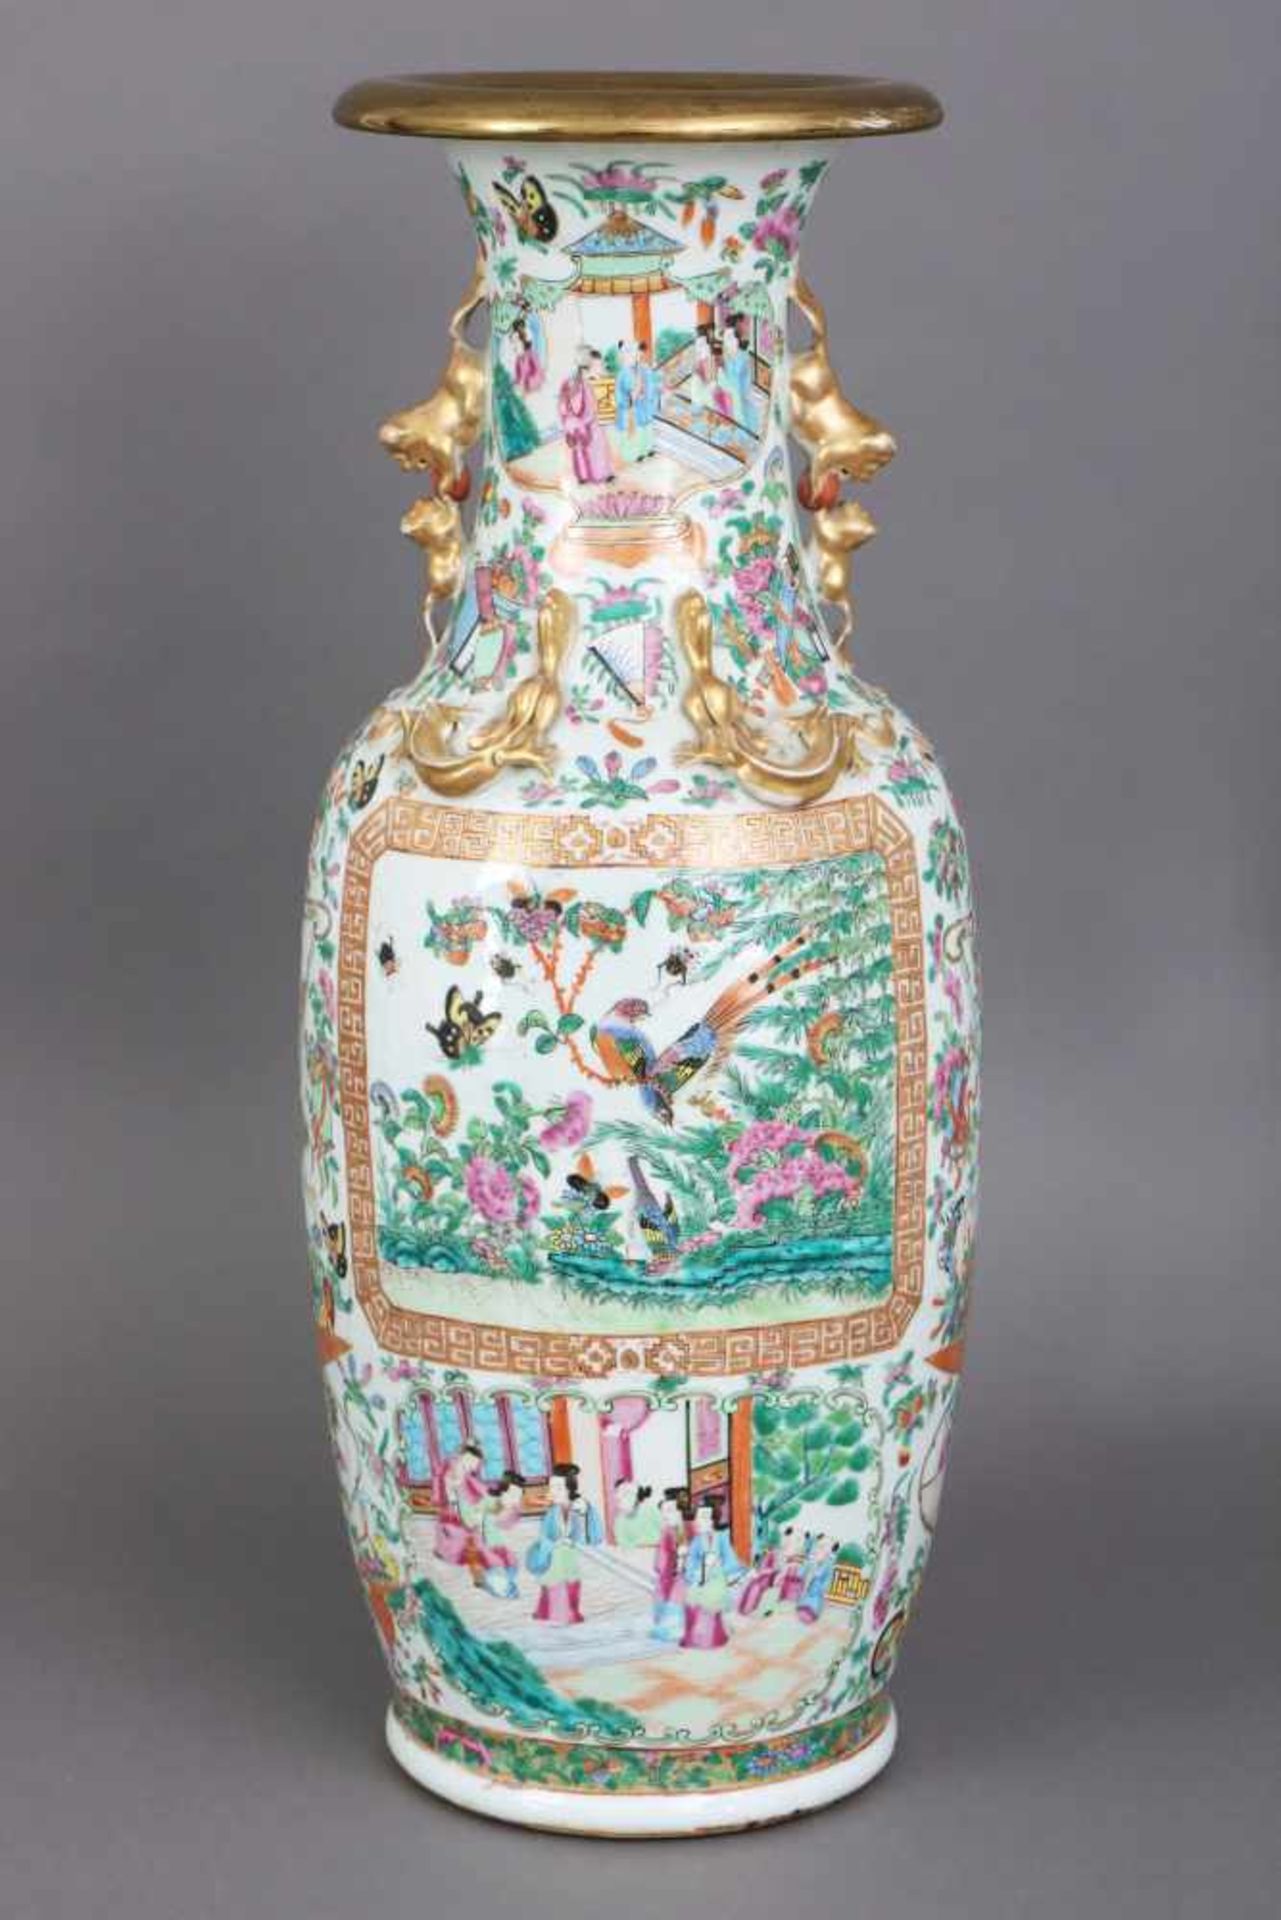 Chinesische VasePorzellan, späte Qing-Dynastie (1644-1912, hier um 1900), ¨famille rose¨-Dekor mit